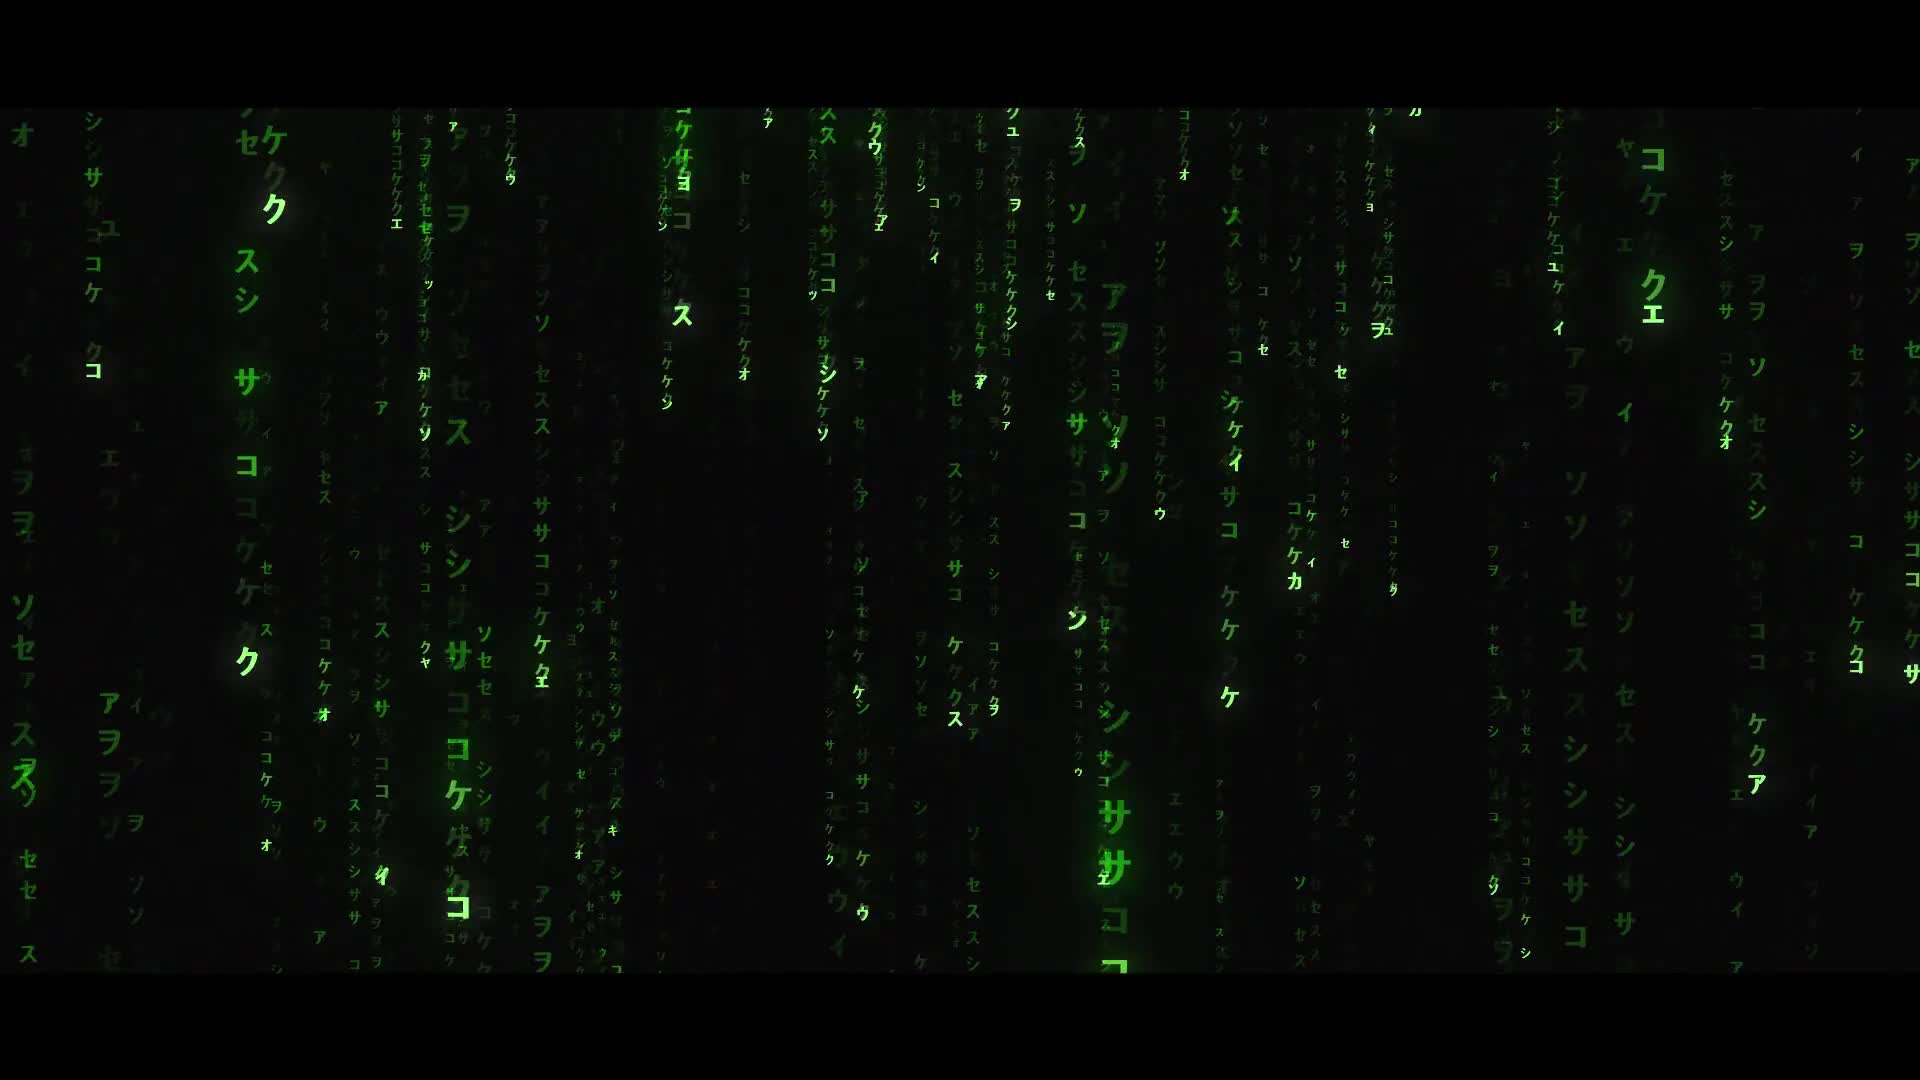 Matrix 4 Awakening Videohive 35248912 After Effects Image 1